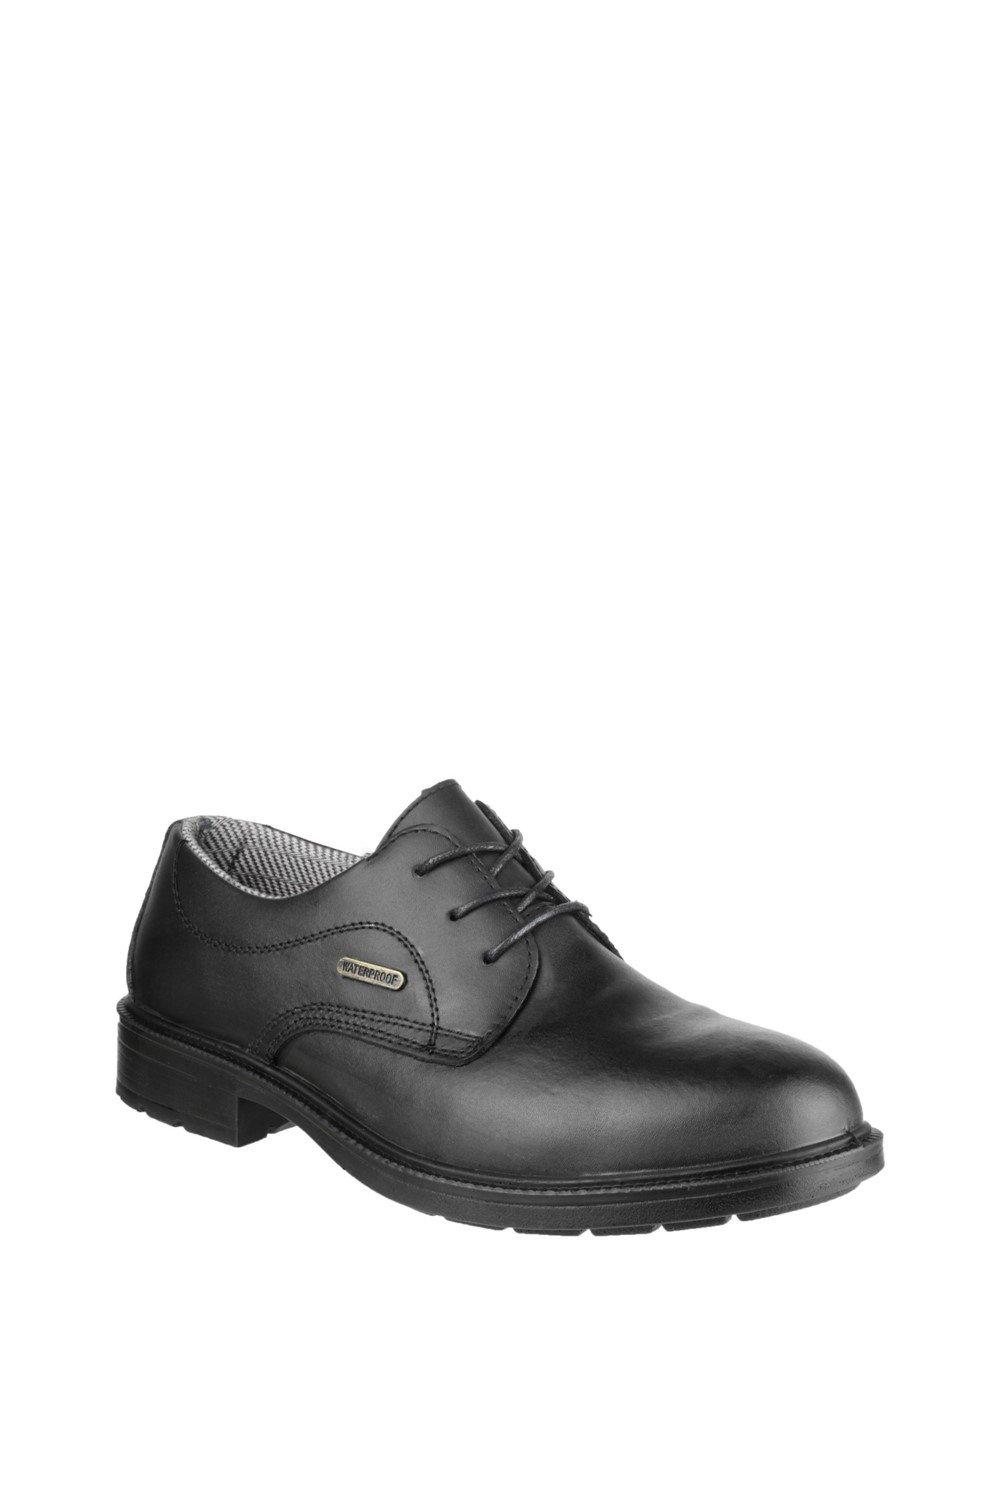 Защитная обувь 'FS62' Amblers Safety, черный мужская защитная рабочая обувь со стальным носком непрокалываемые рабочие ботинки удобные защитные кроссовки желаемая обувь